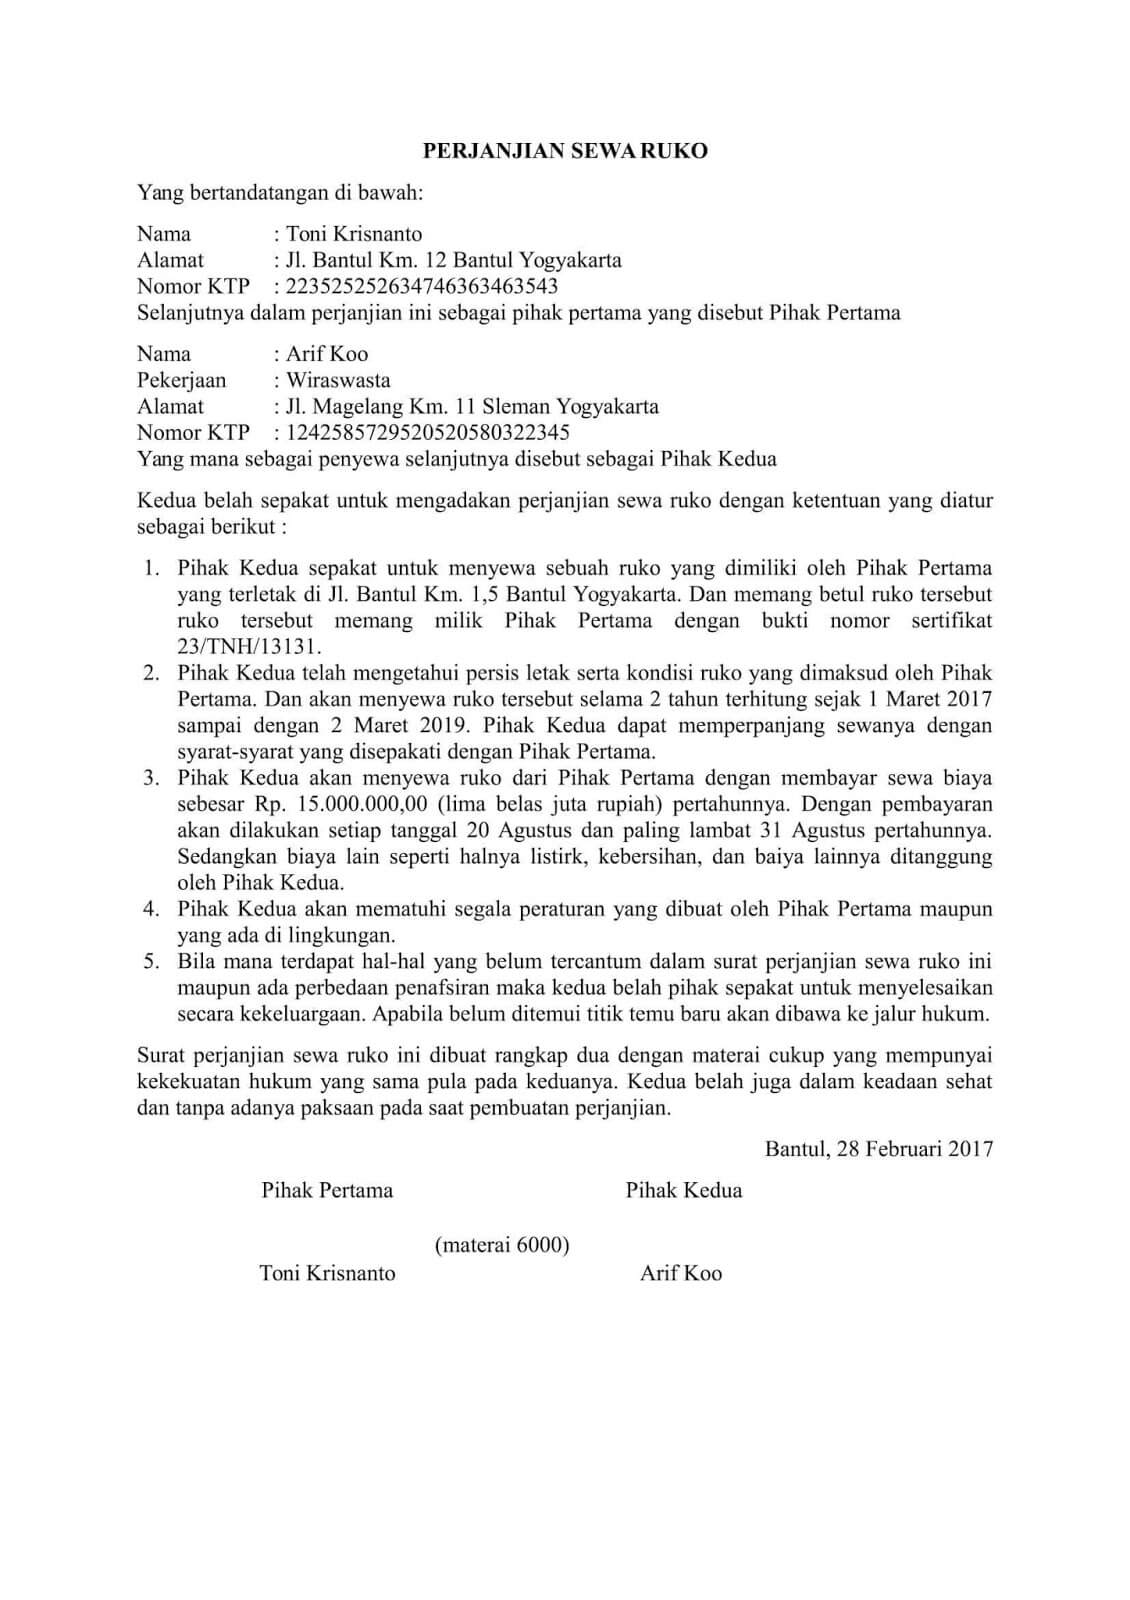 Detail Surat Perjanjian Sewa Toko Nomer 4